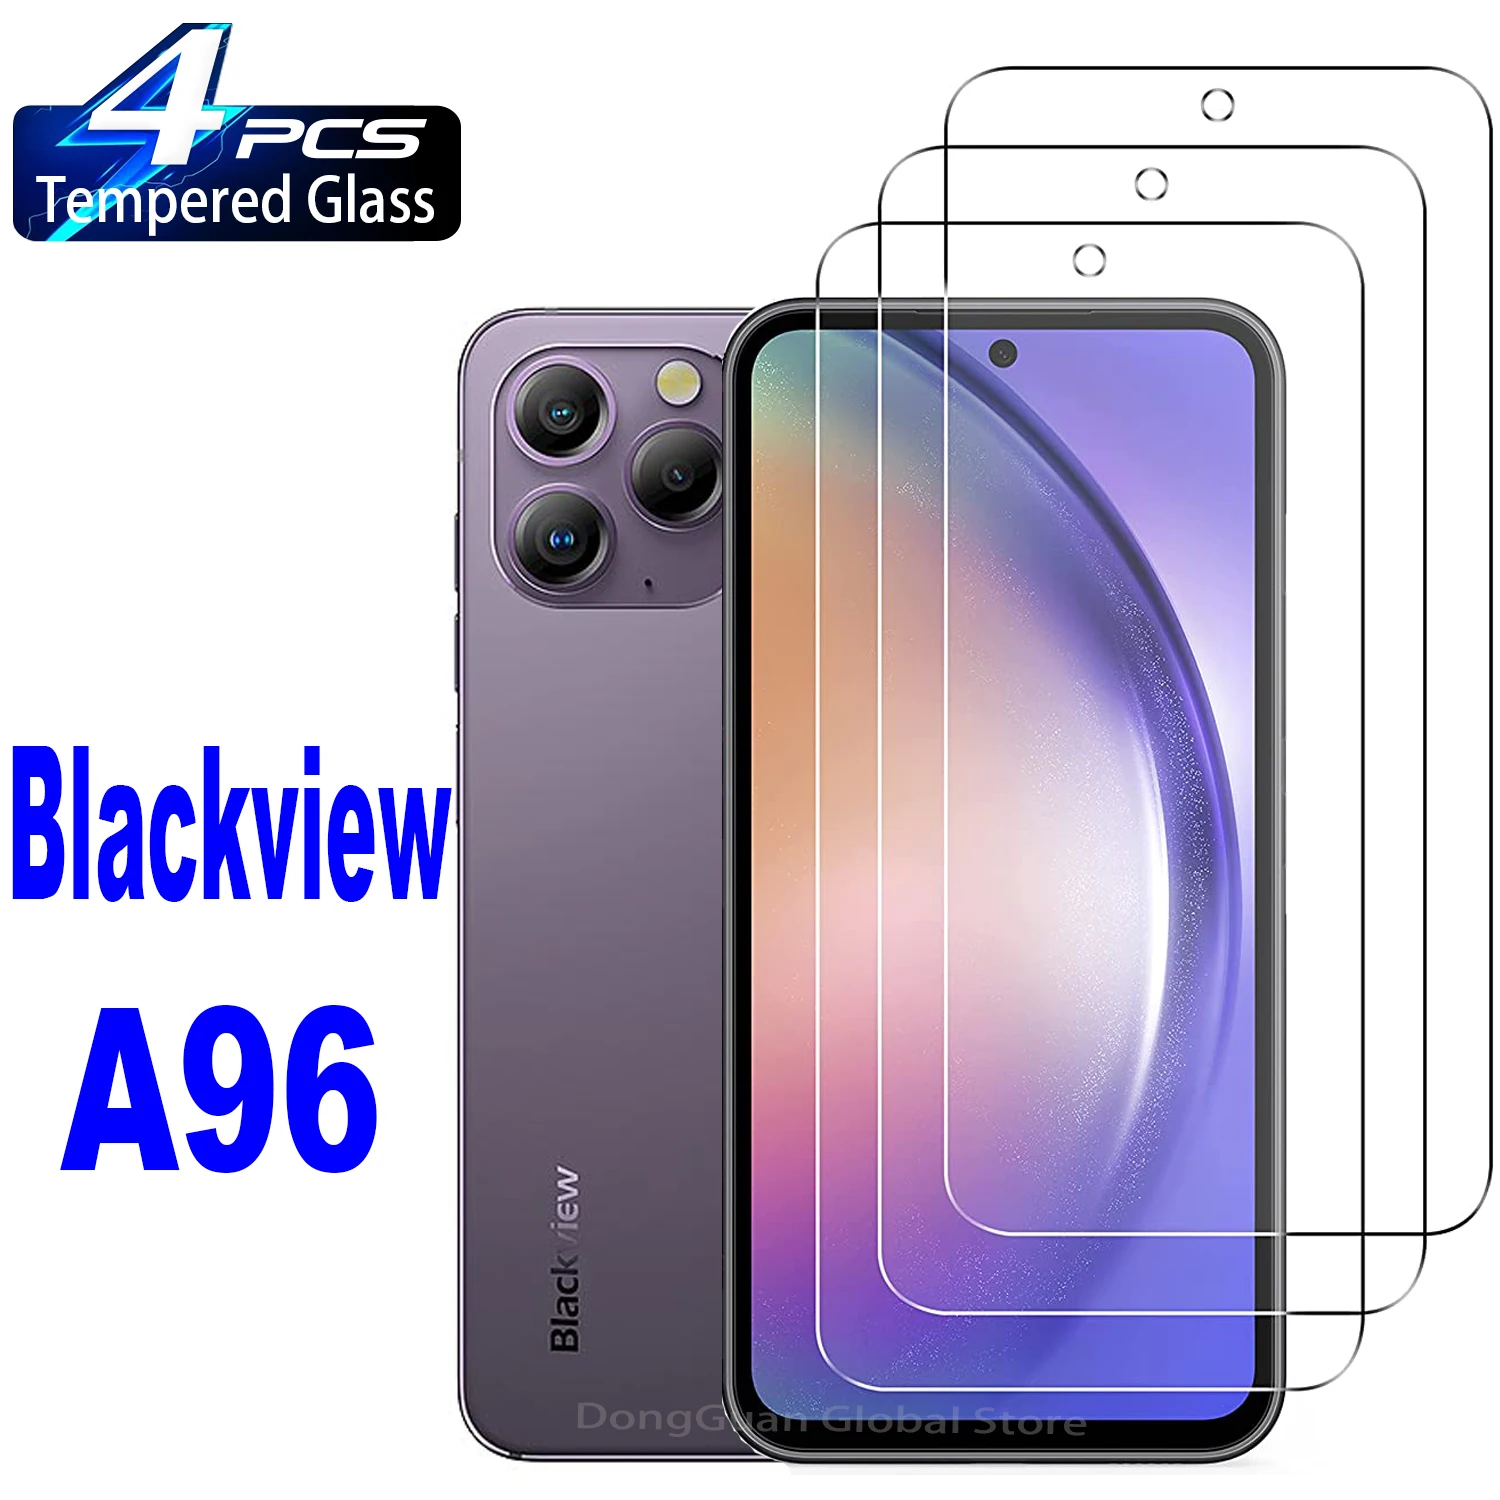 Comprar Smartphone Blackview A96